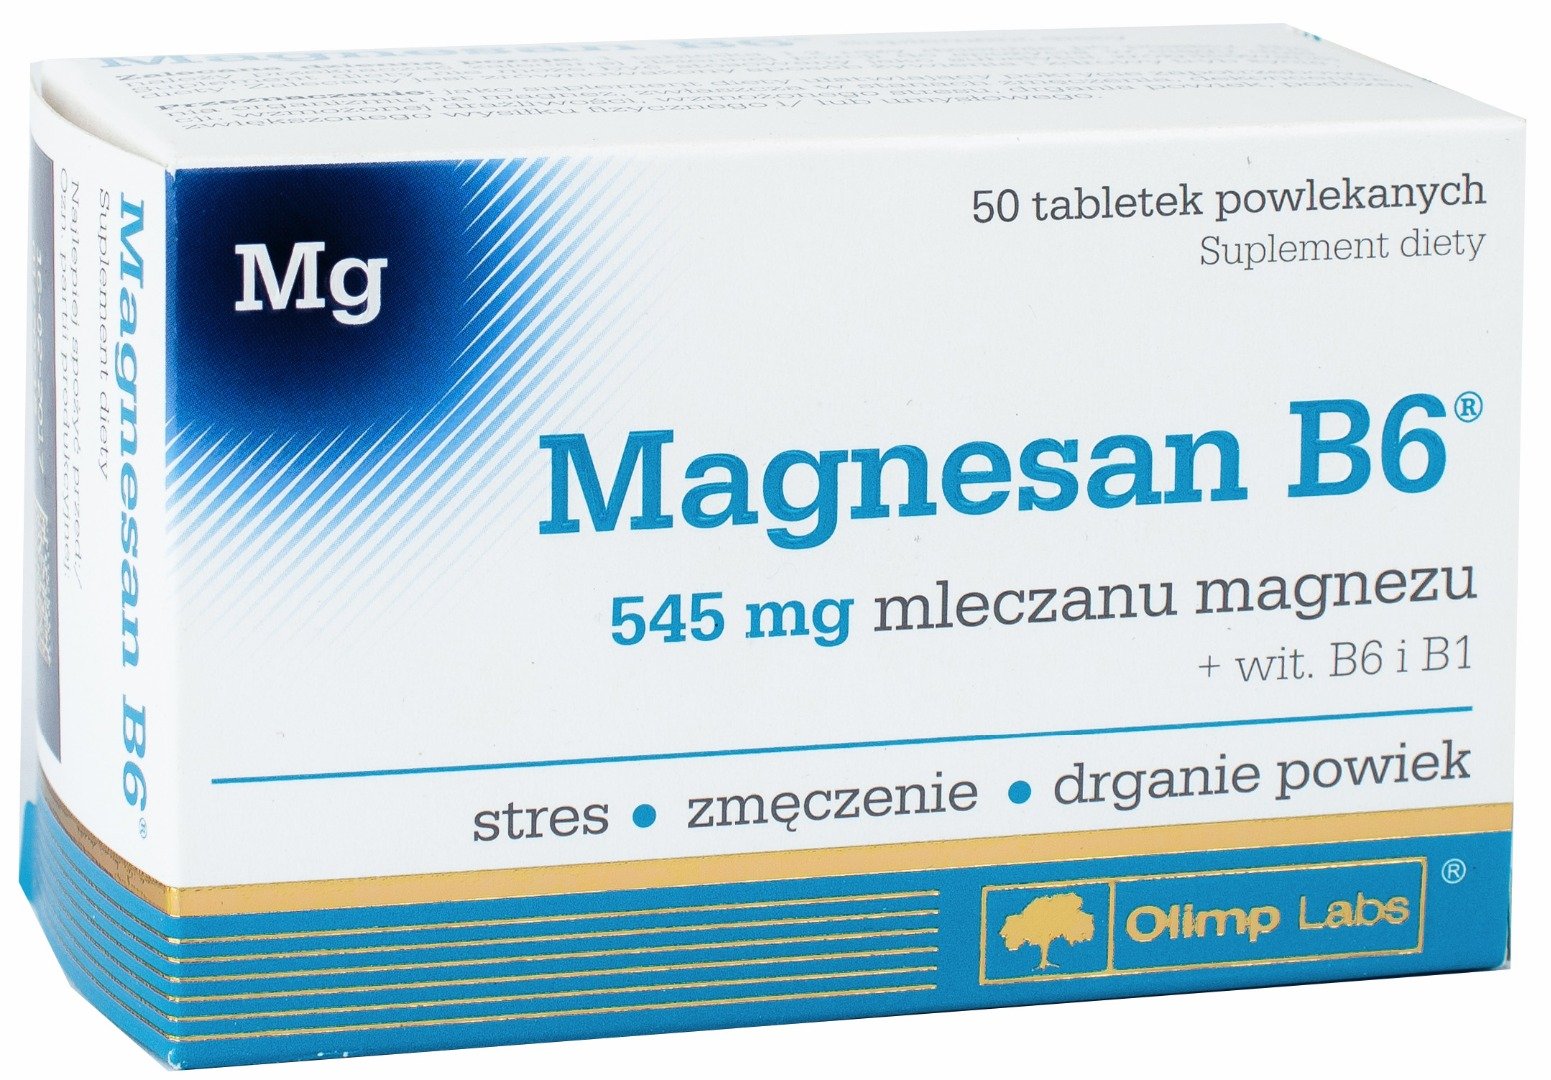 Magnesan B6, 50 шт, Olimp Labs. Витаминно-минеральный комплекс. Поддержание здоровья Укрепление иммунитета 